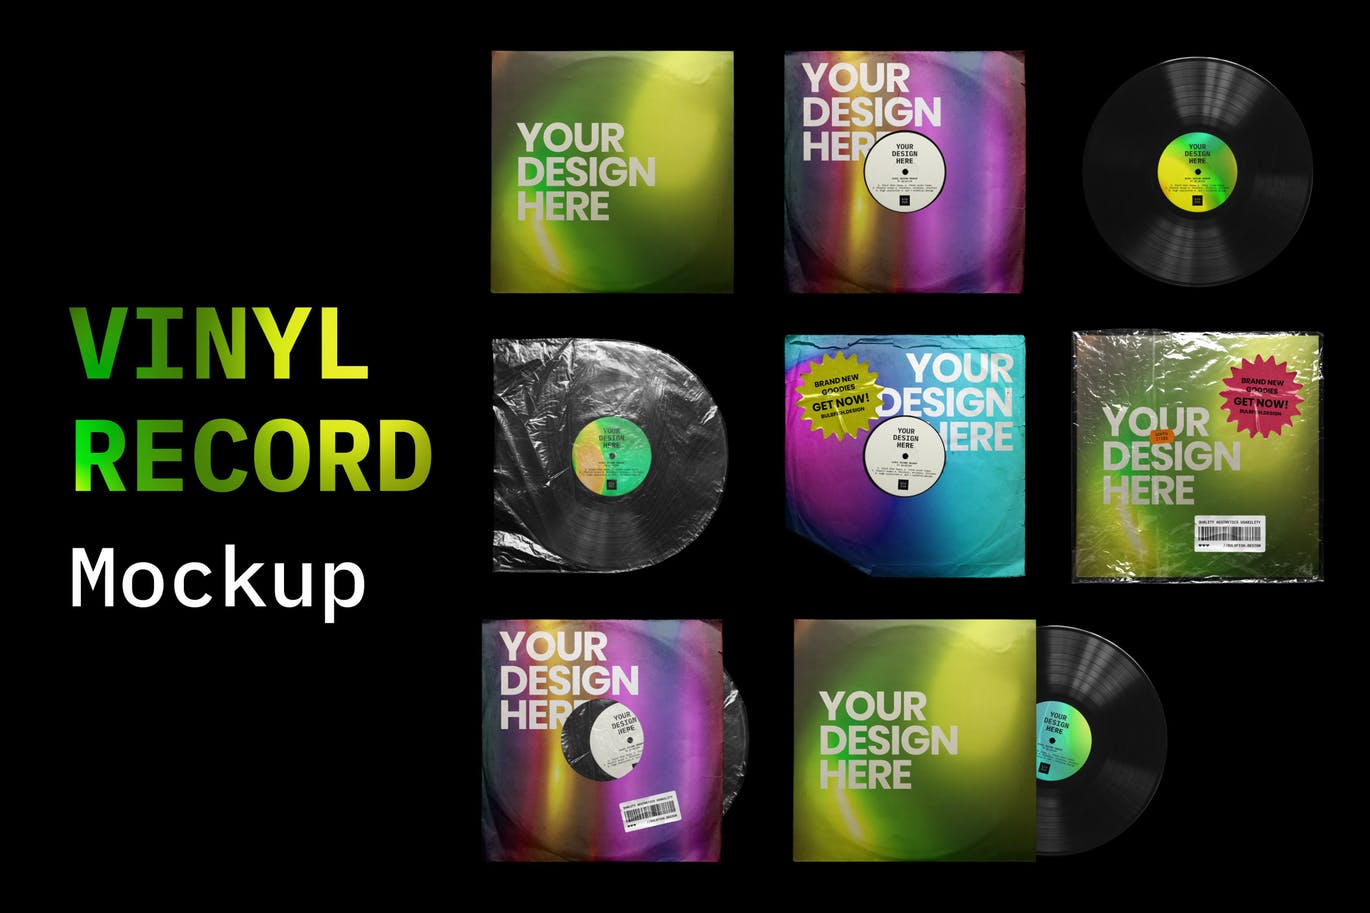 乙烯基唱片包装盒及封面设计图第一素材精选模板 Vinyl Record Mockup插图